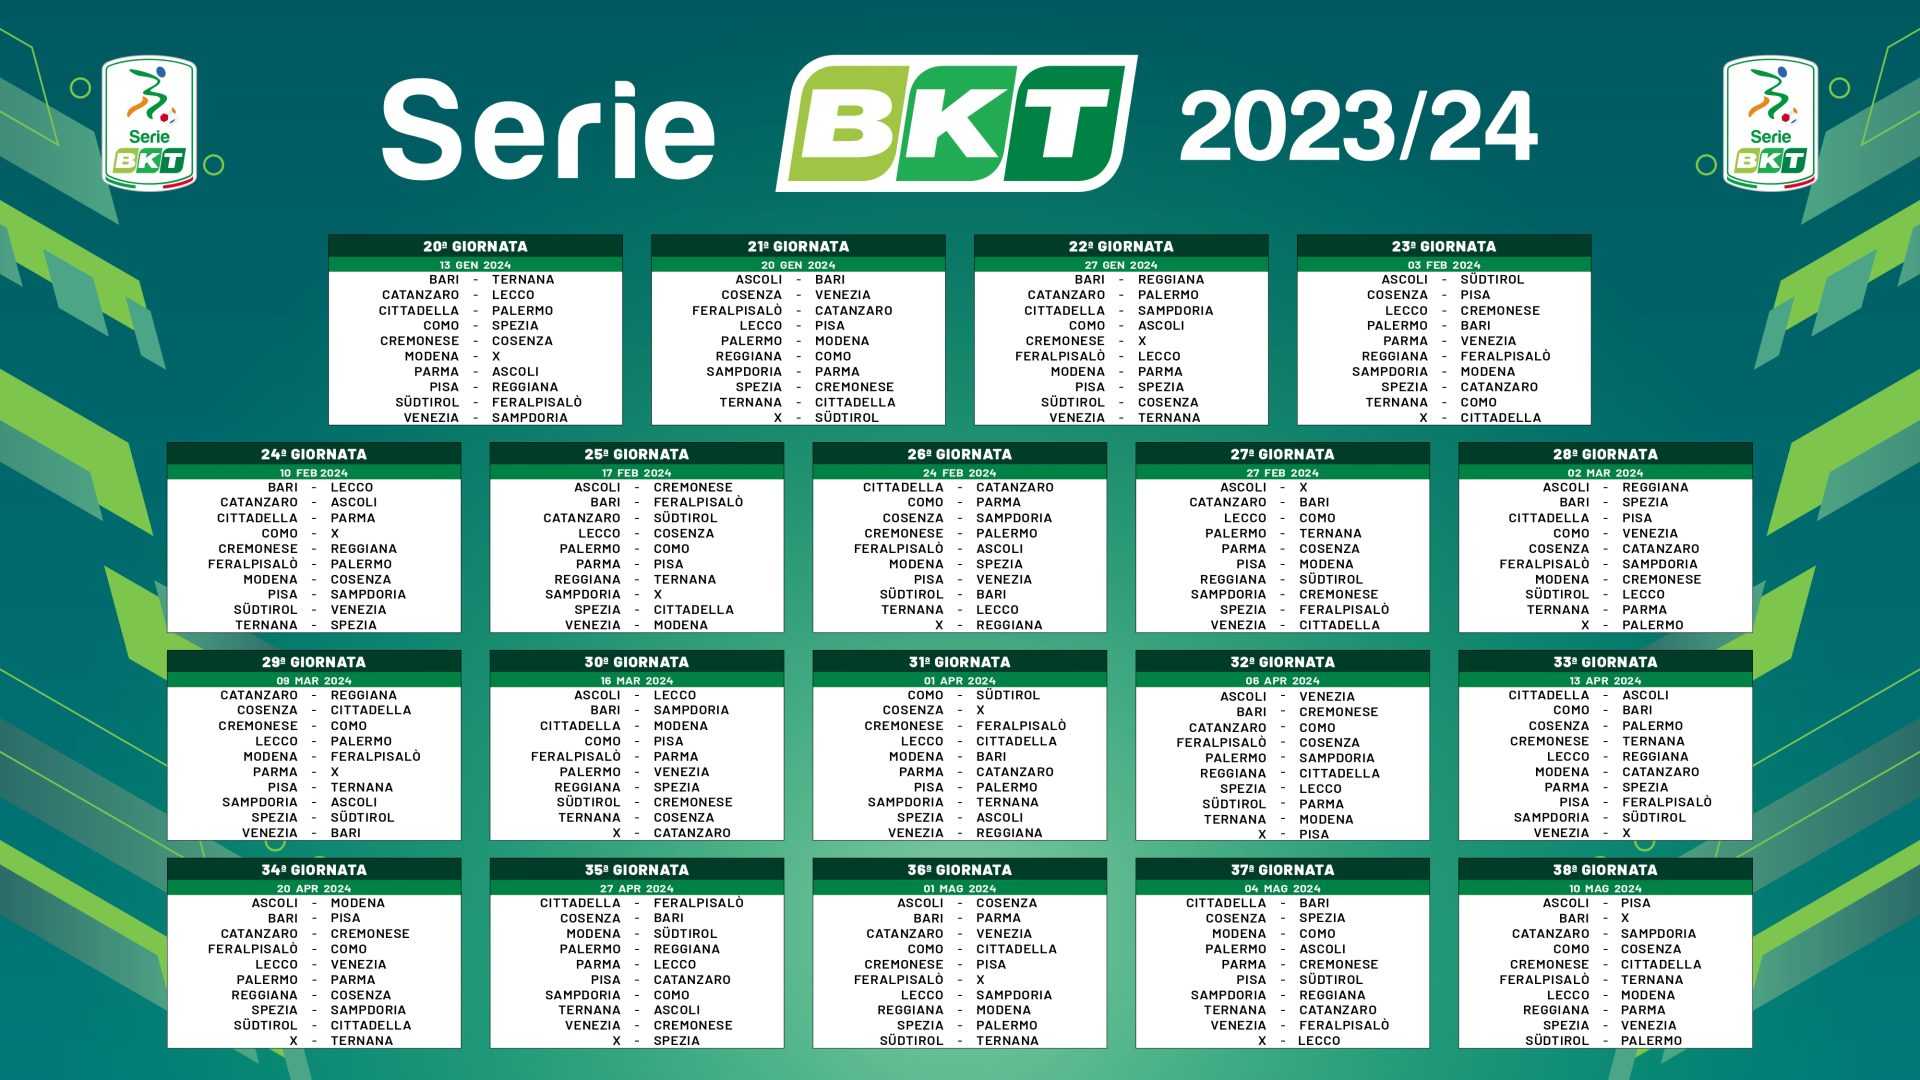 Caos in Serie B: sarà necessaria una modifica al calendario?